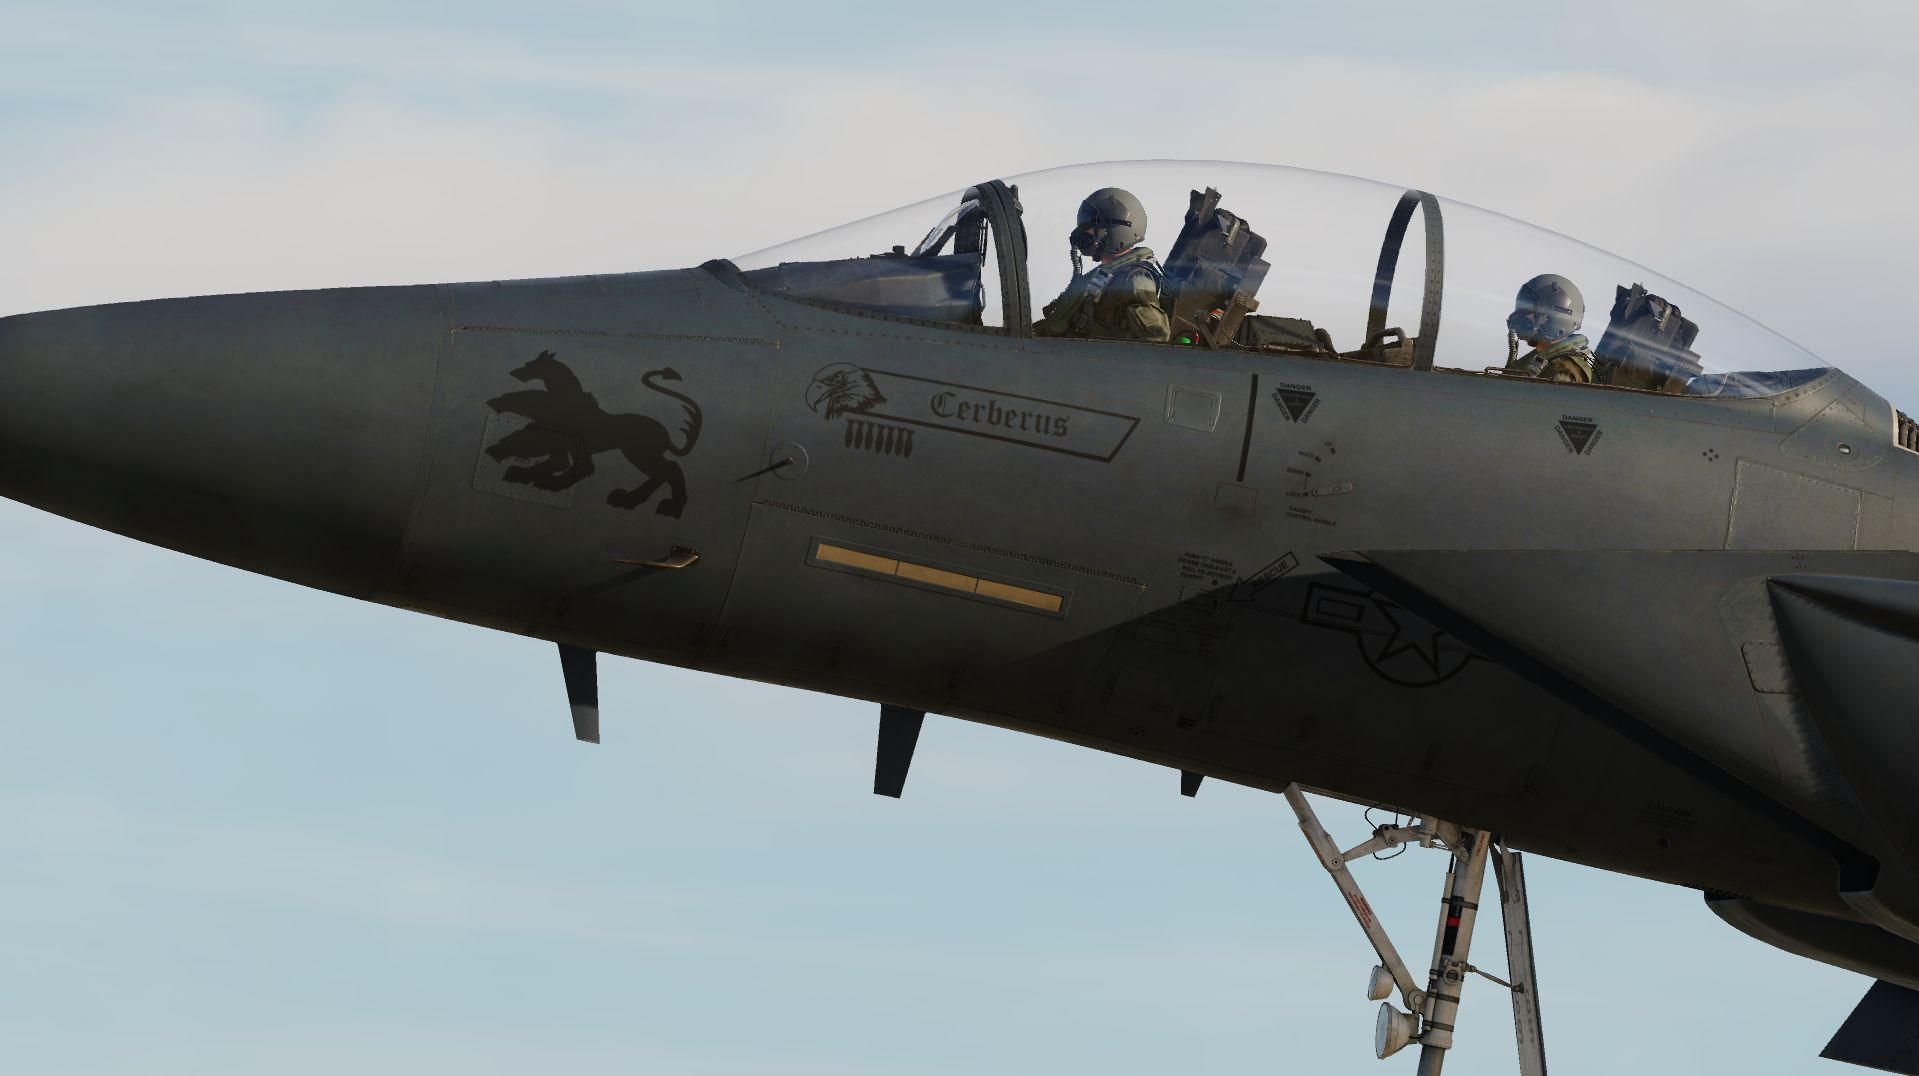 F-15E strike eagle Mo 87-169 "Cerberus"